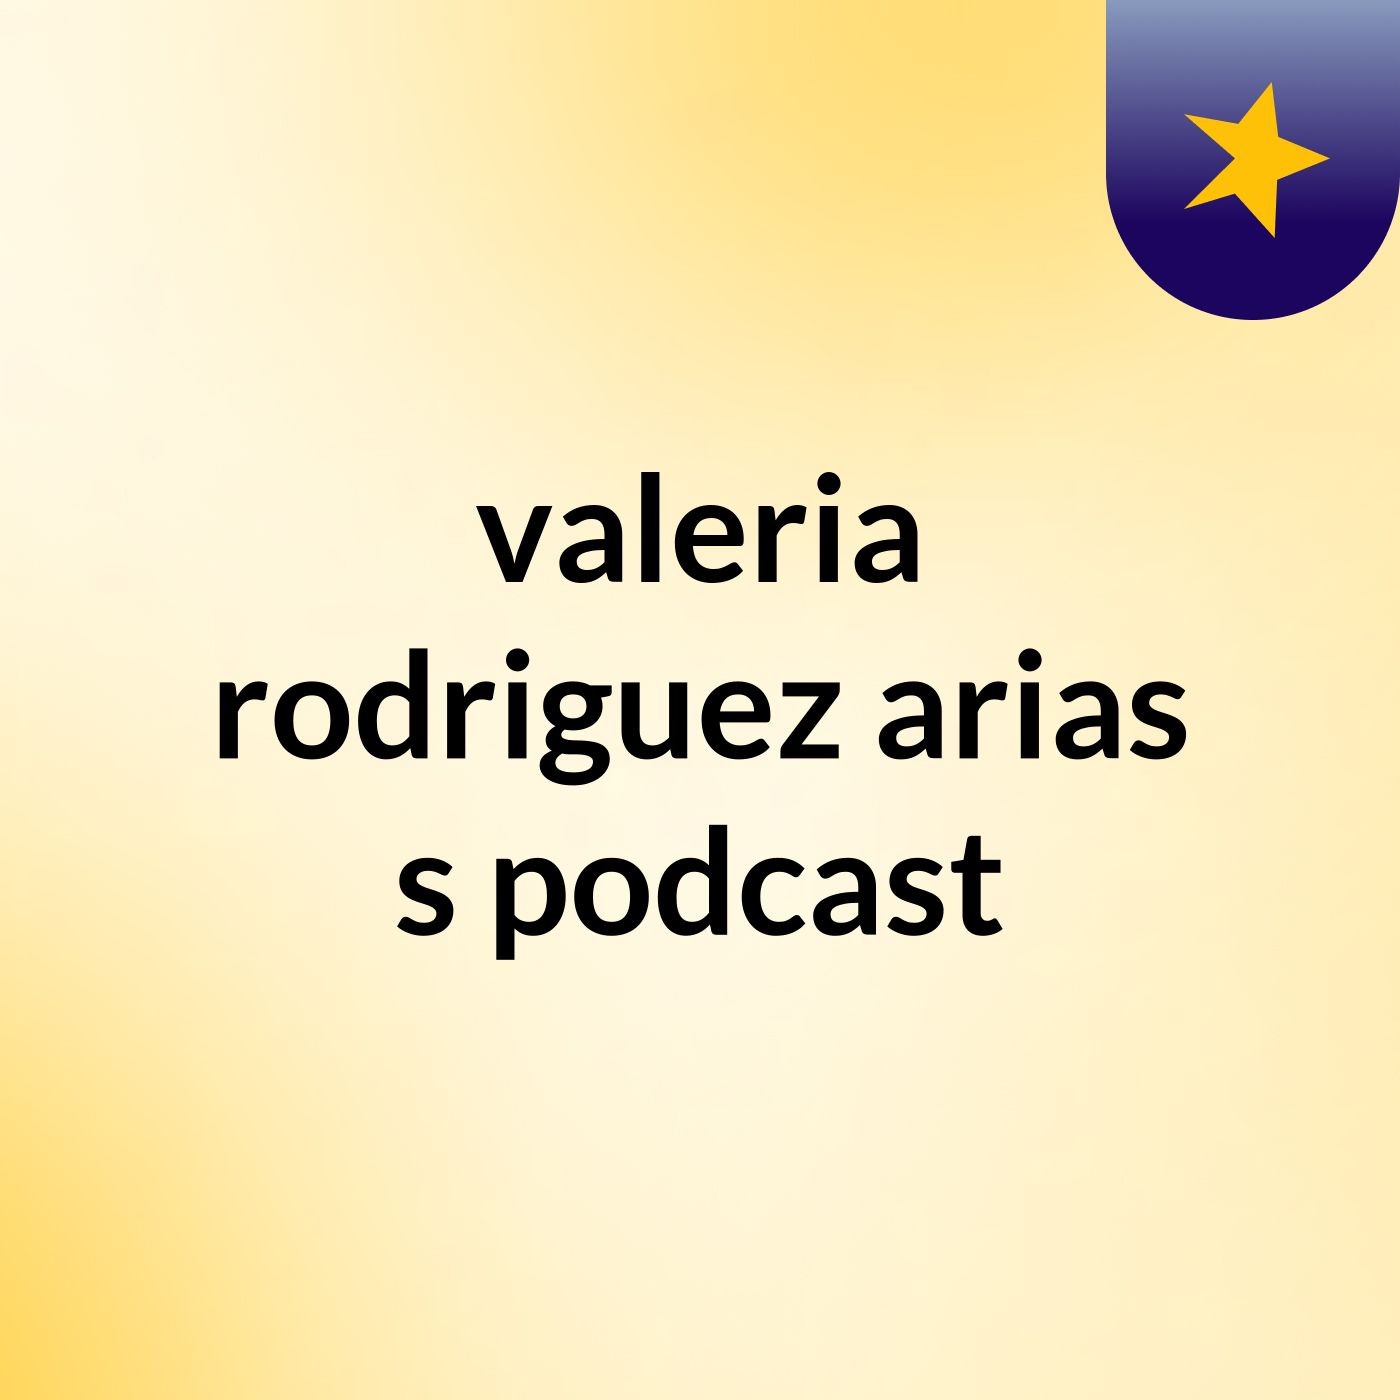 valeria rodriguez arias's podcast